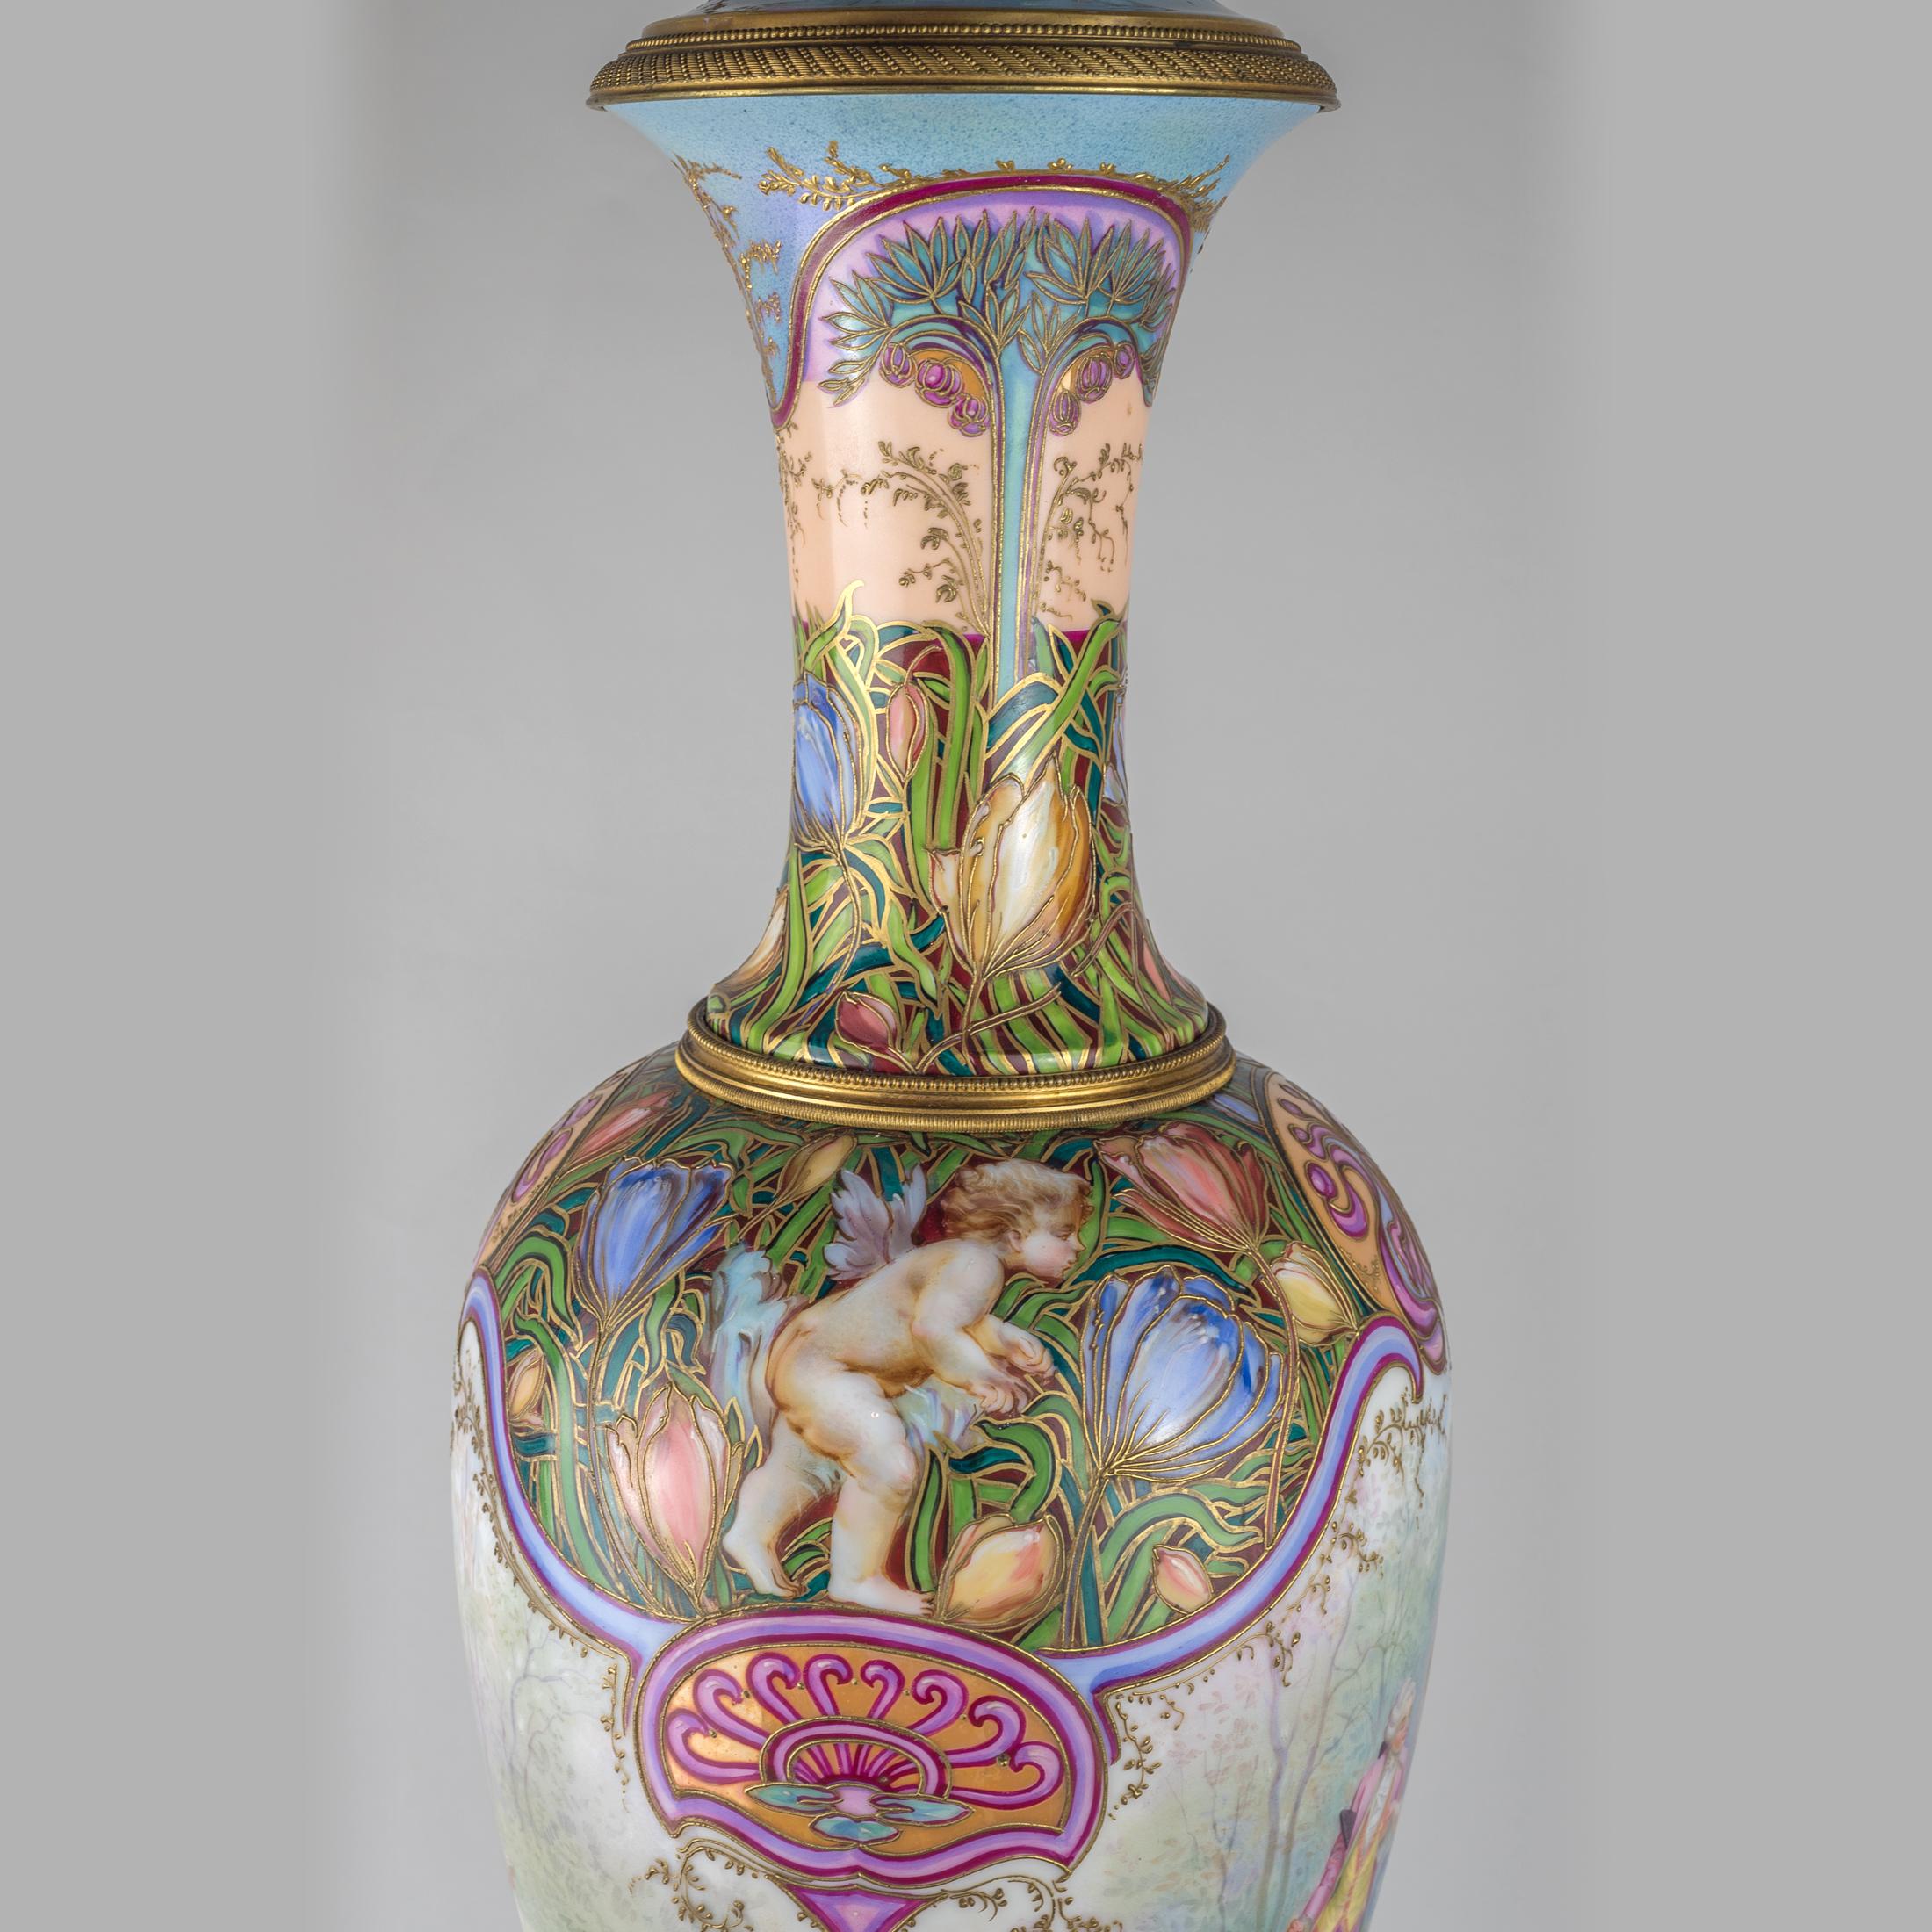 French 19th Century Sèvres Style Gilt Porcelain Iridescent Glaze Portrait Vase For Sale